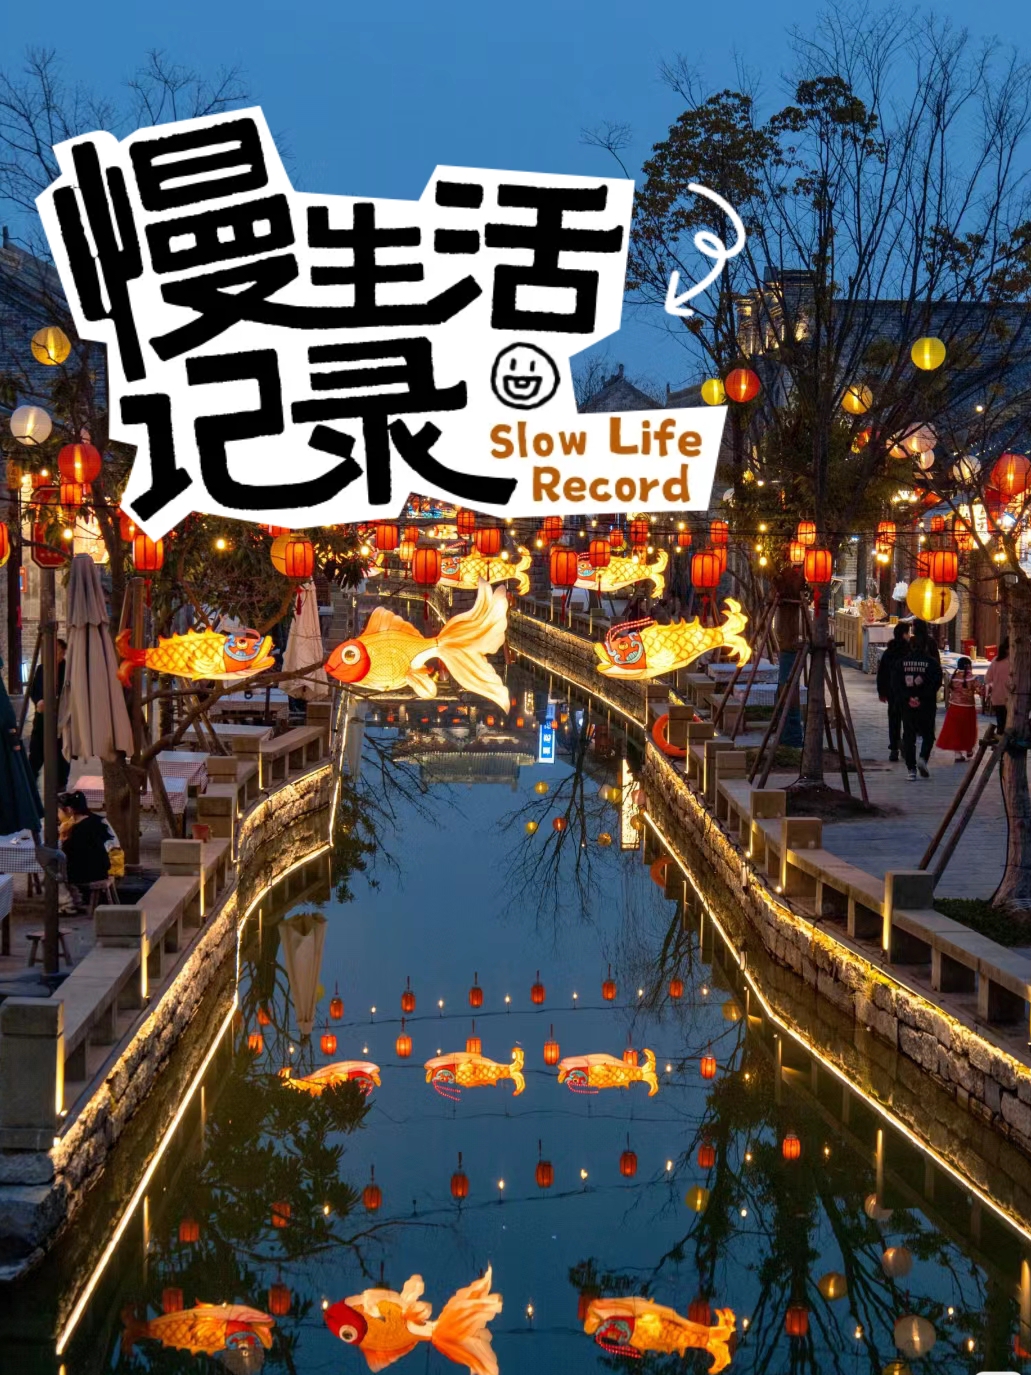 后悔才来，江苏被严重低估的小众旅游城市！！